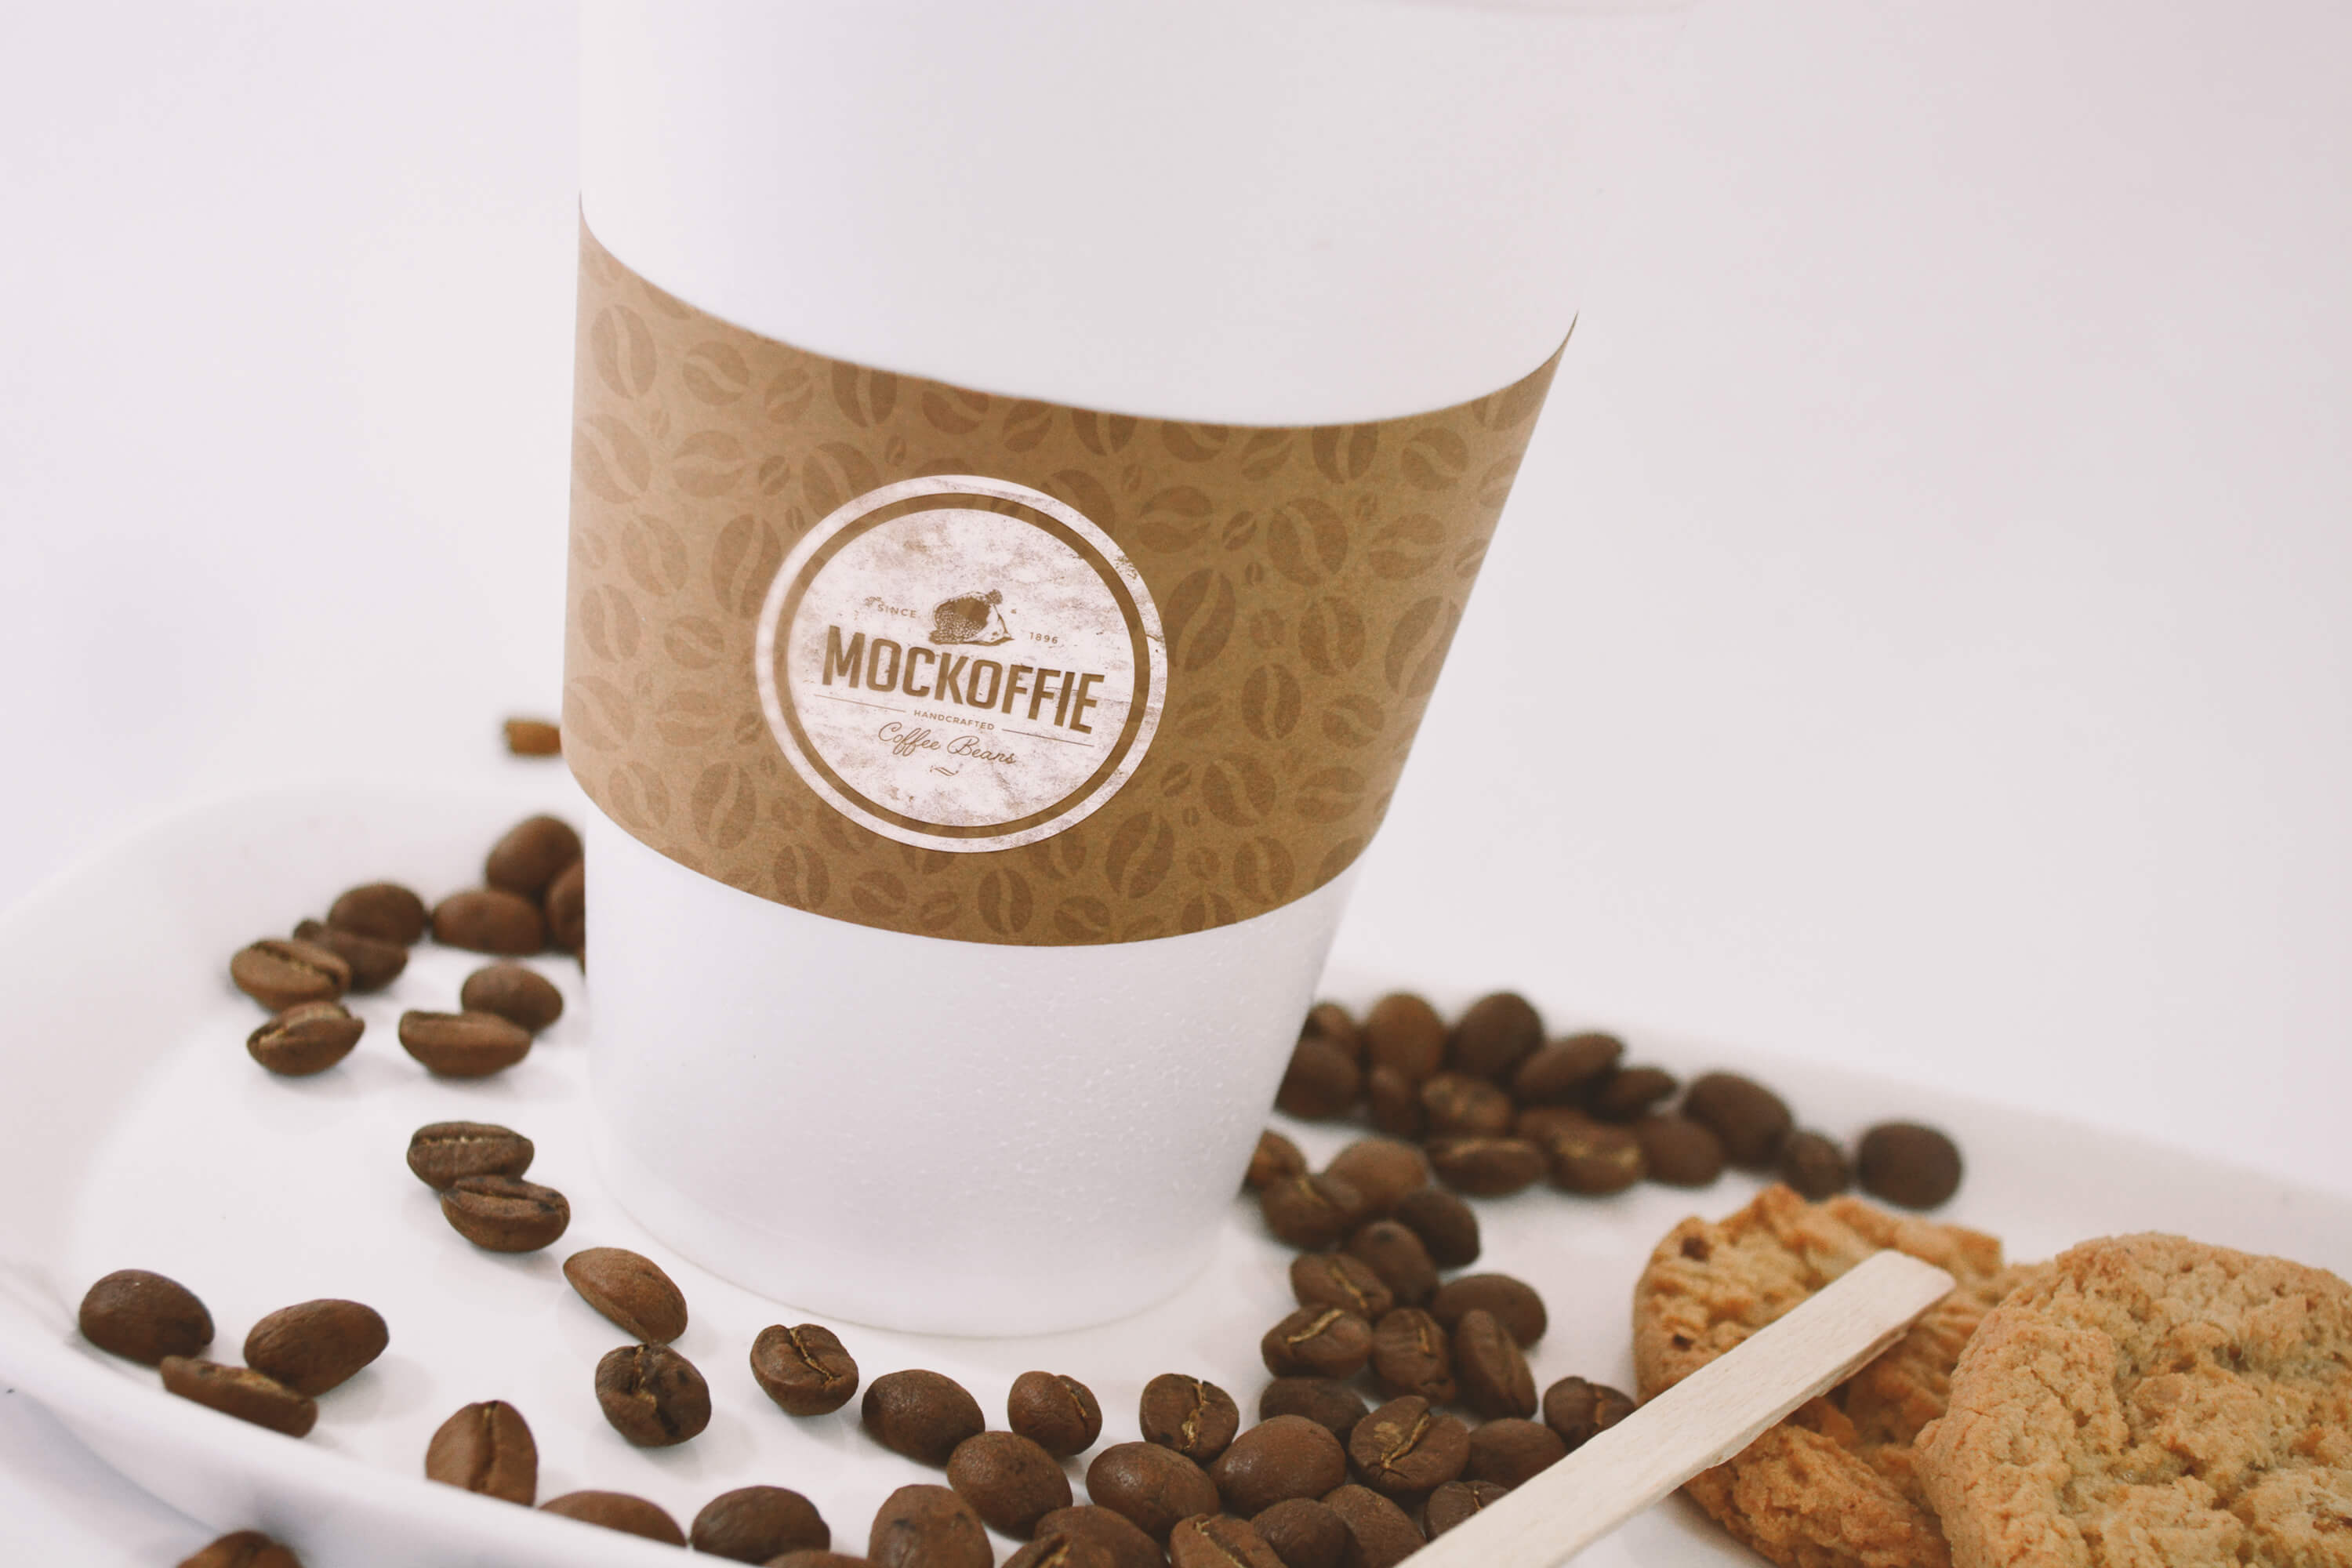 咖啡品牌VI设计预览咖啡杯特写视图样机 Large Coffee Cup Mockup – Close up View插图